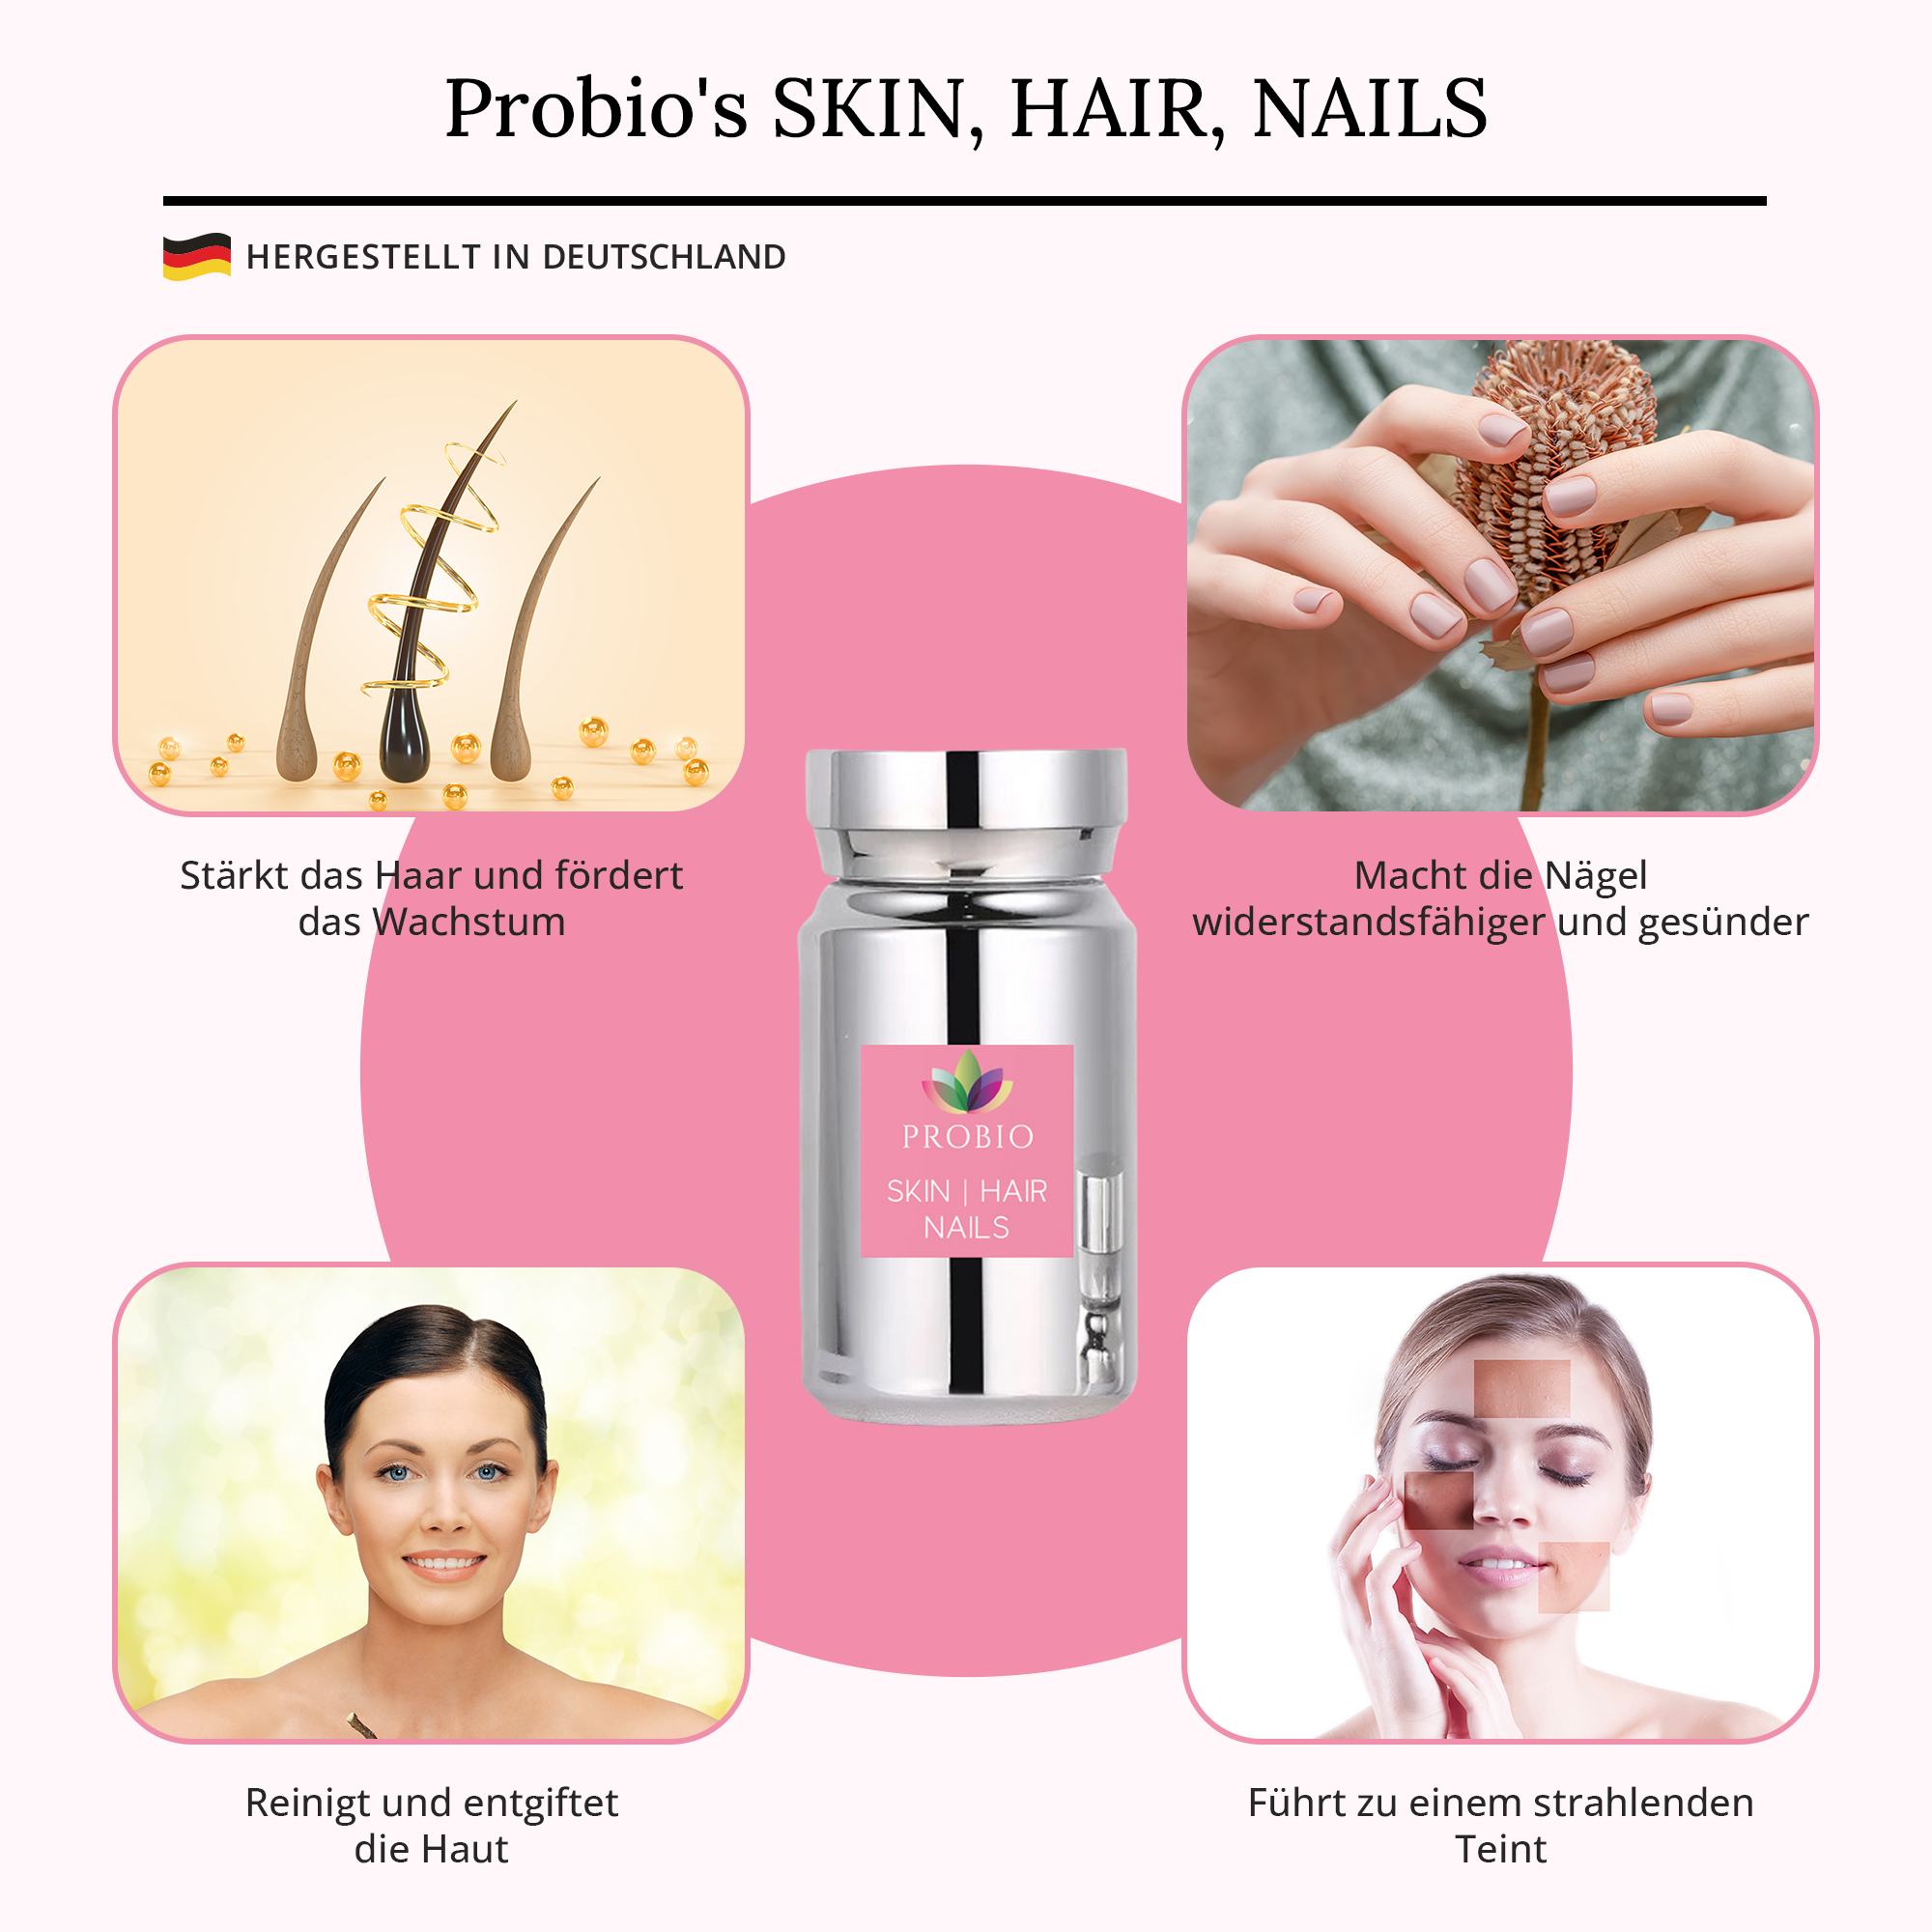 Probio's Skin, Hair, Nails: stärkt das Haar, fördert das Wachstum und führt zu einem strahlenden Teint.